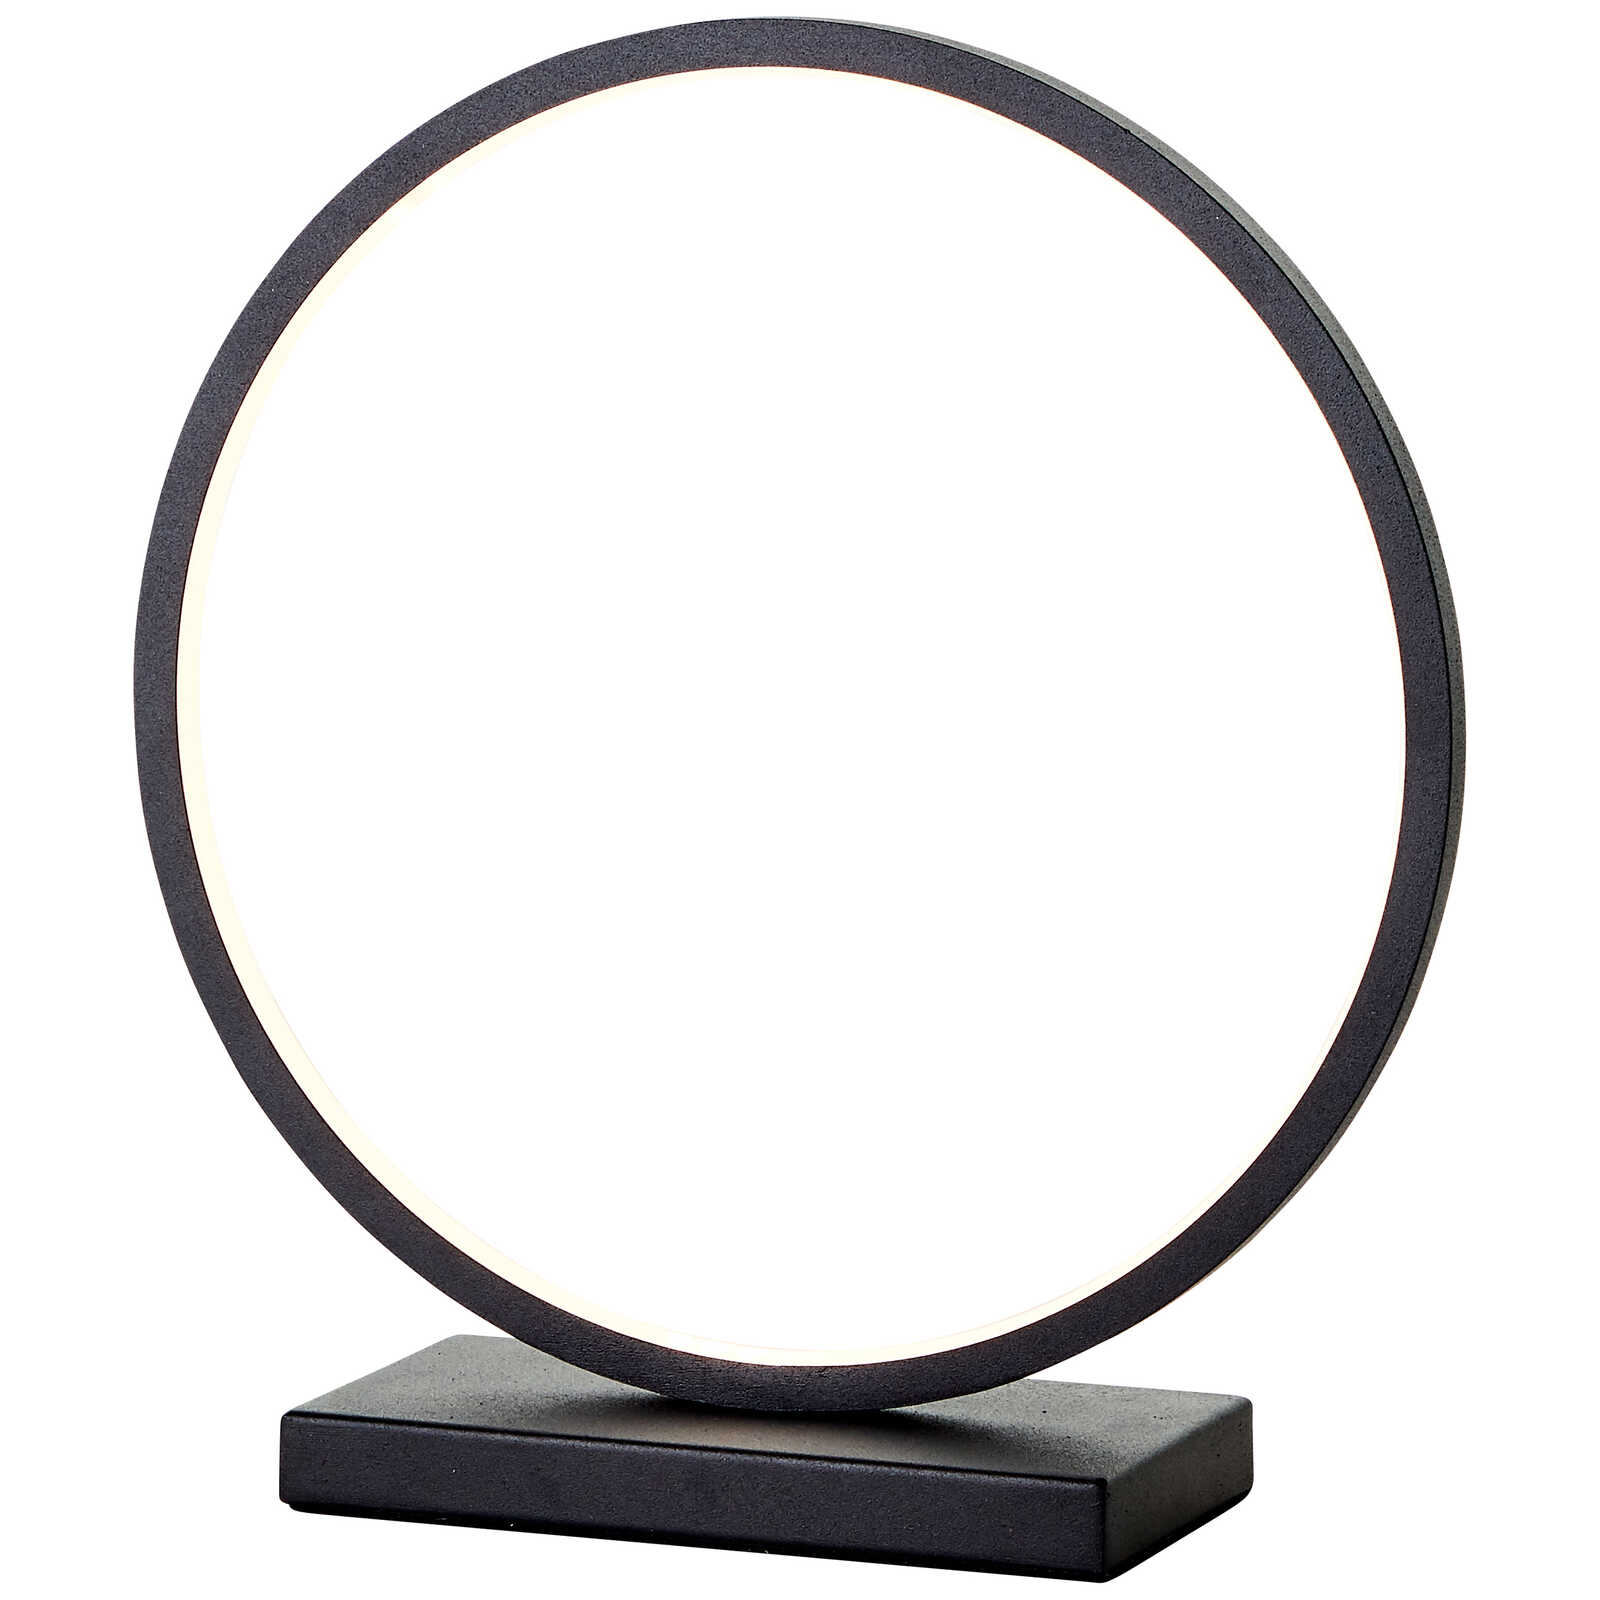             Metal table lamp - Elea 8 - Black
        